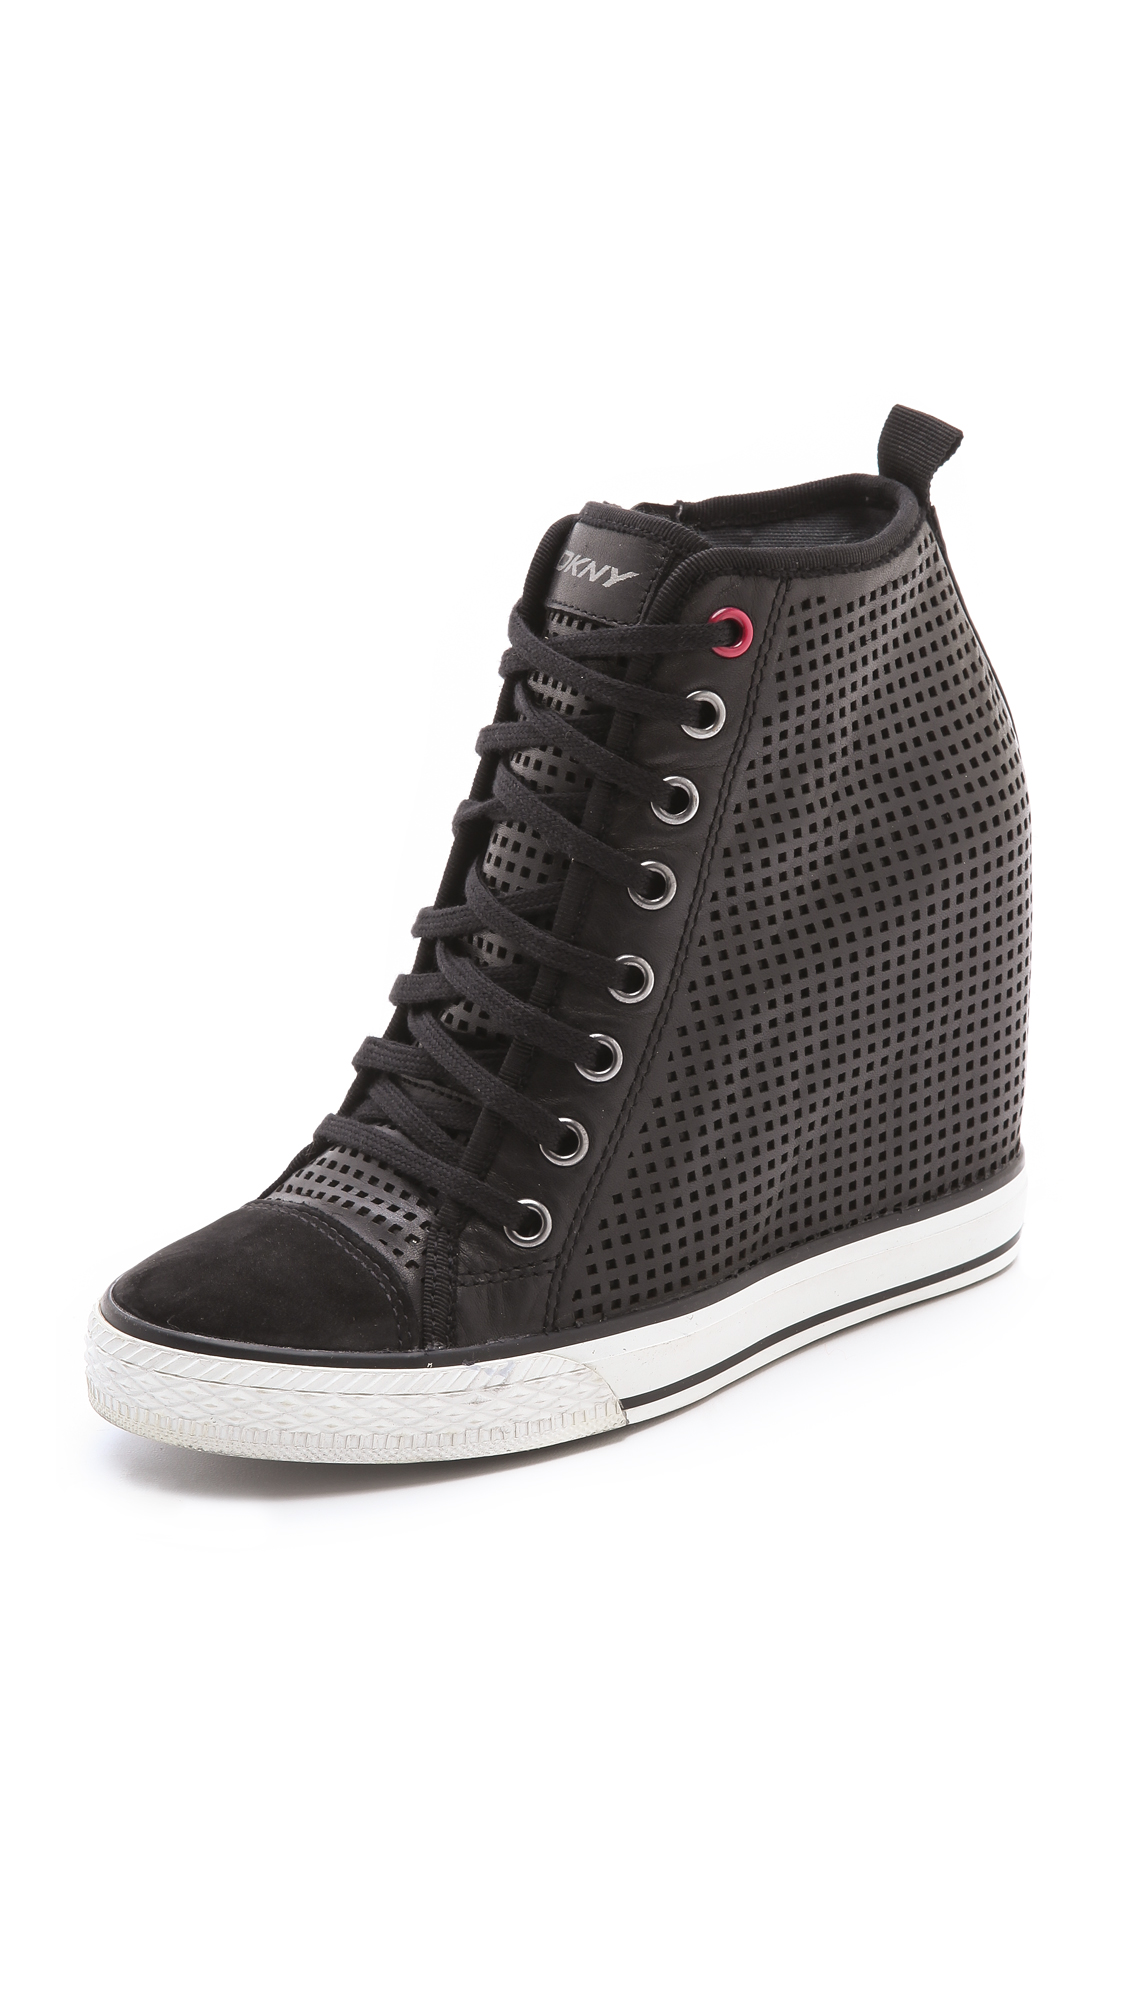 Dkny Grommet Wedge Sneakers in Black | Lyst